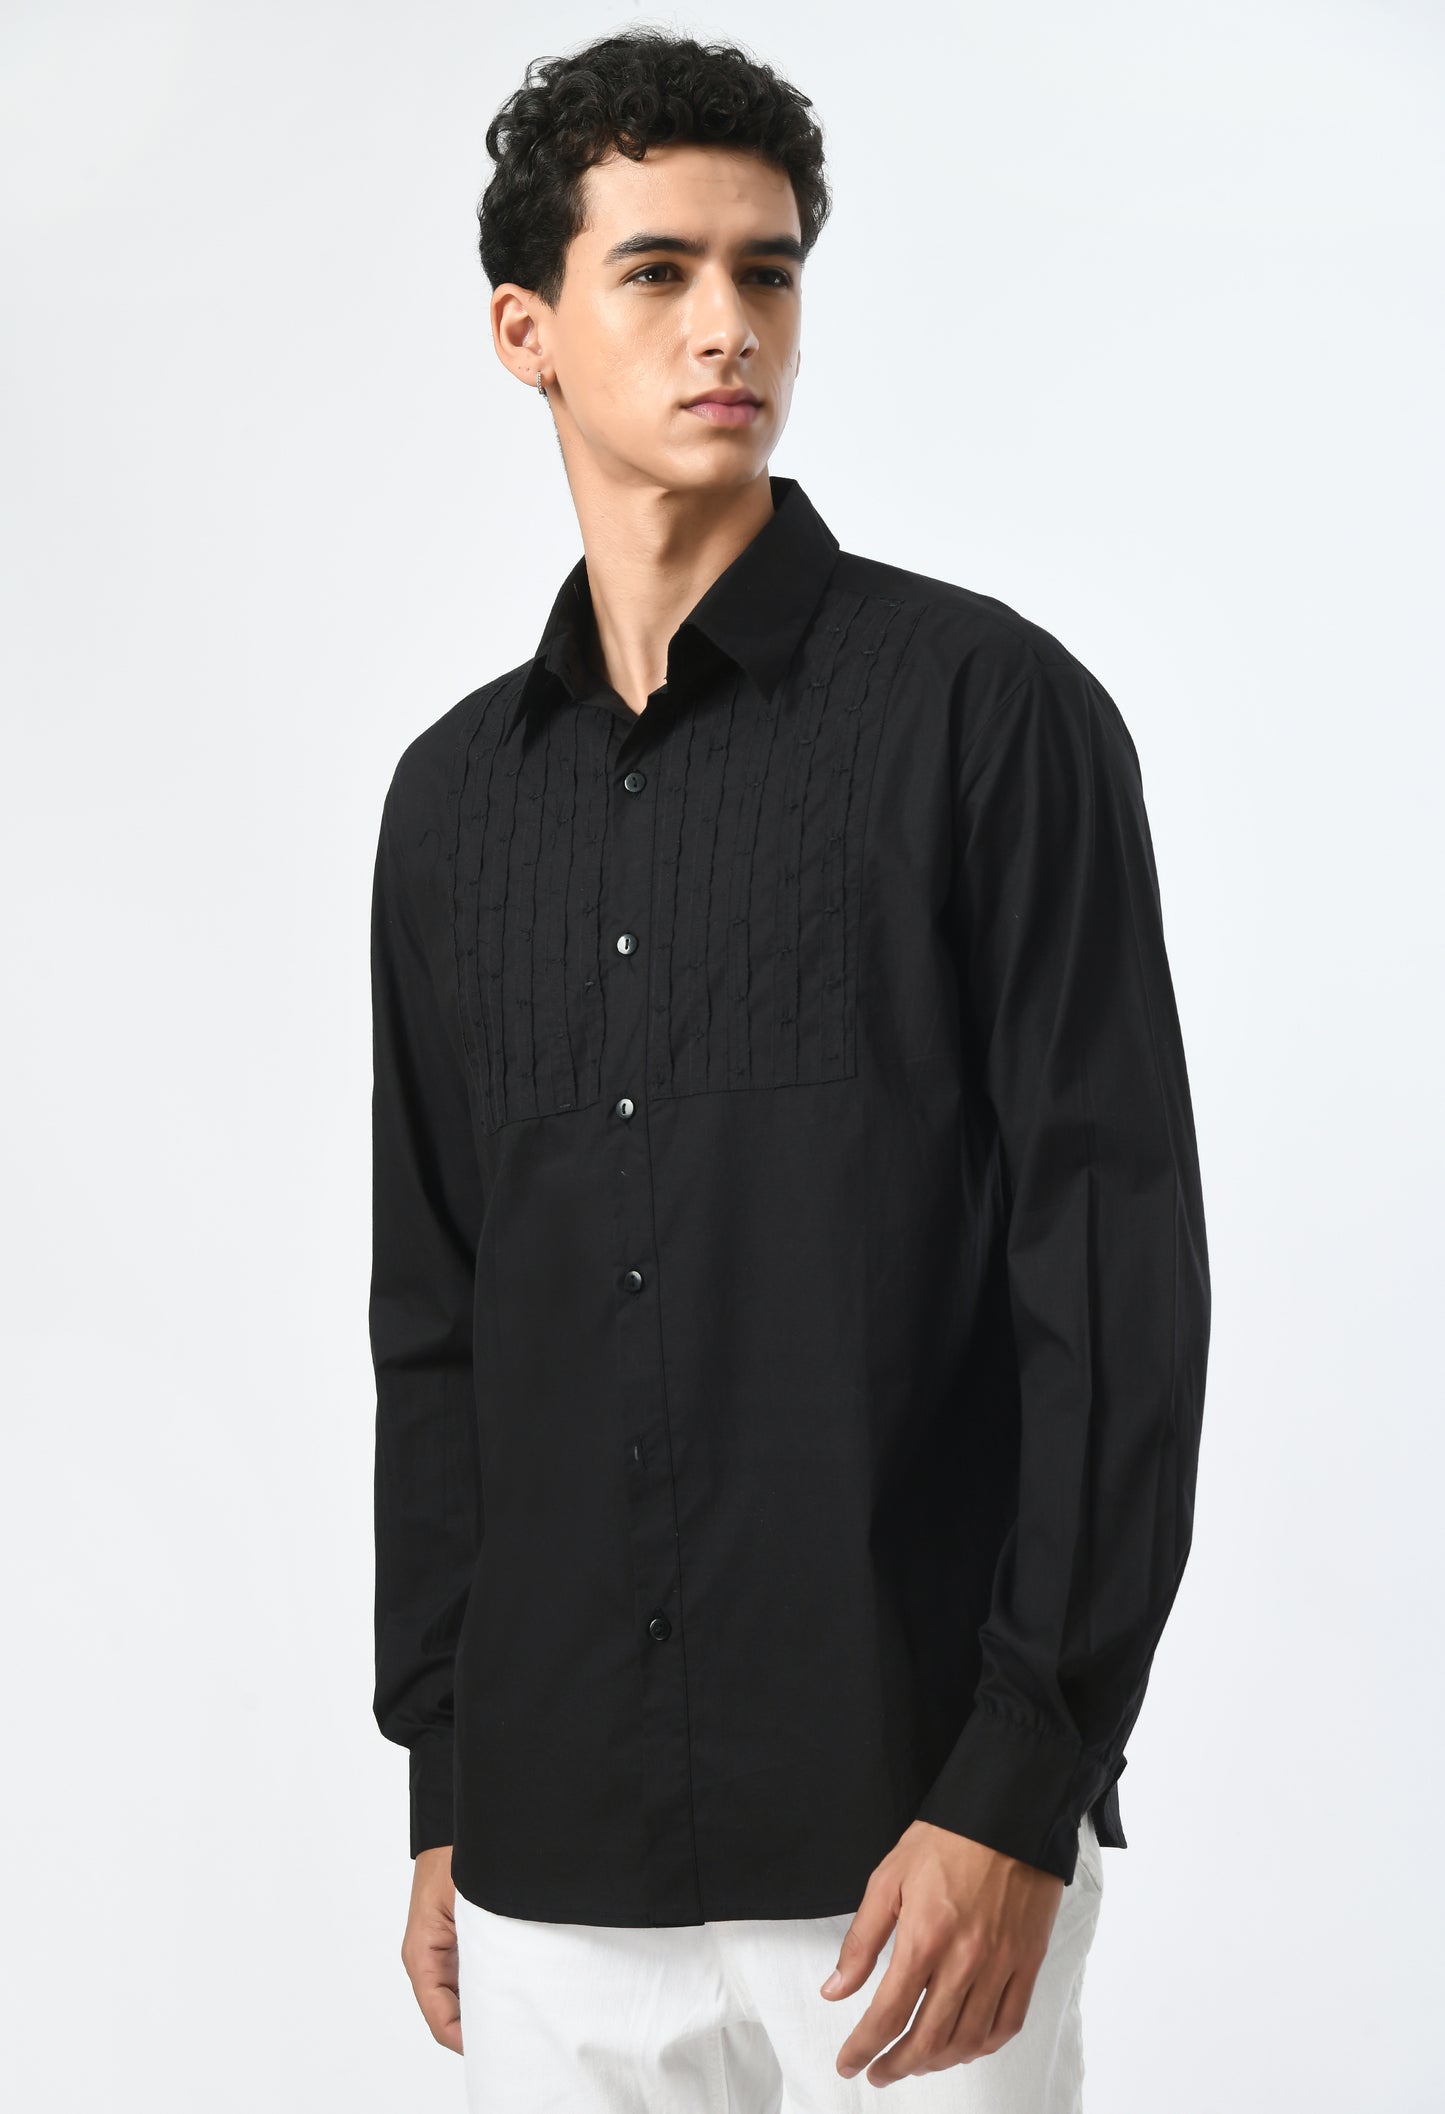 Semi-formal look men's black shirt.